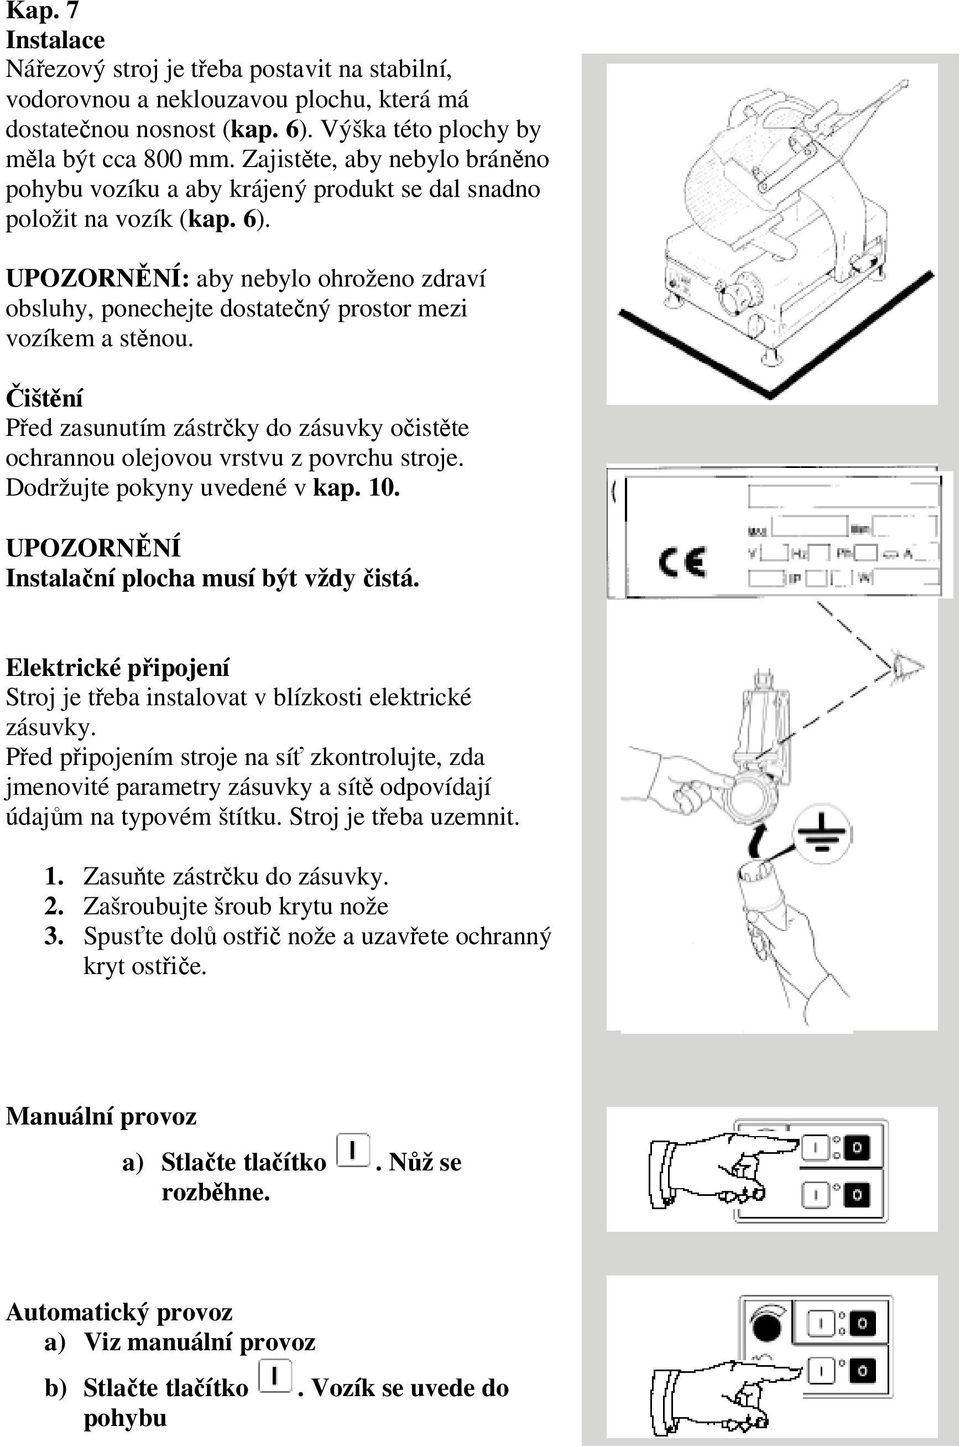 Náezový stroj. Návod k použití - PDF Free Download